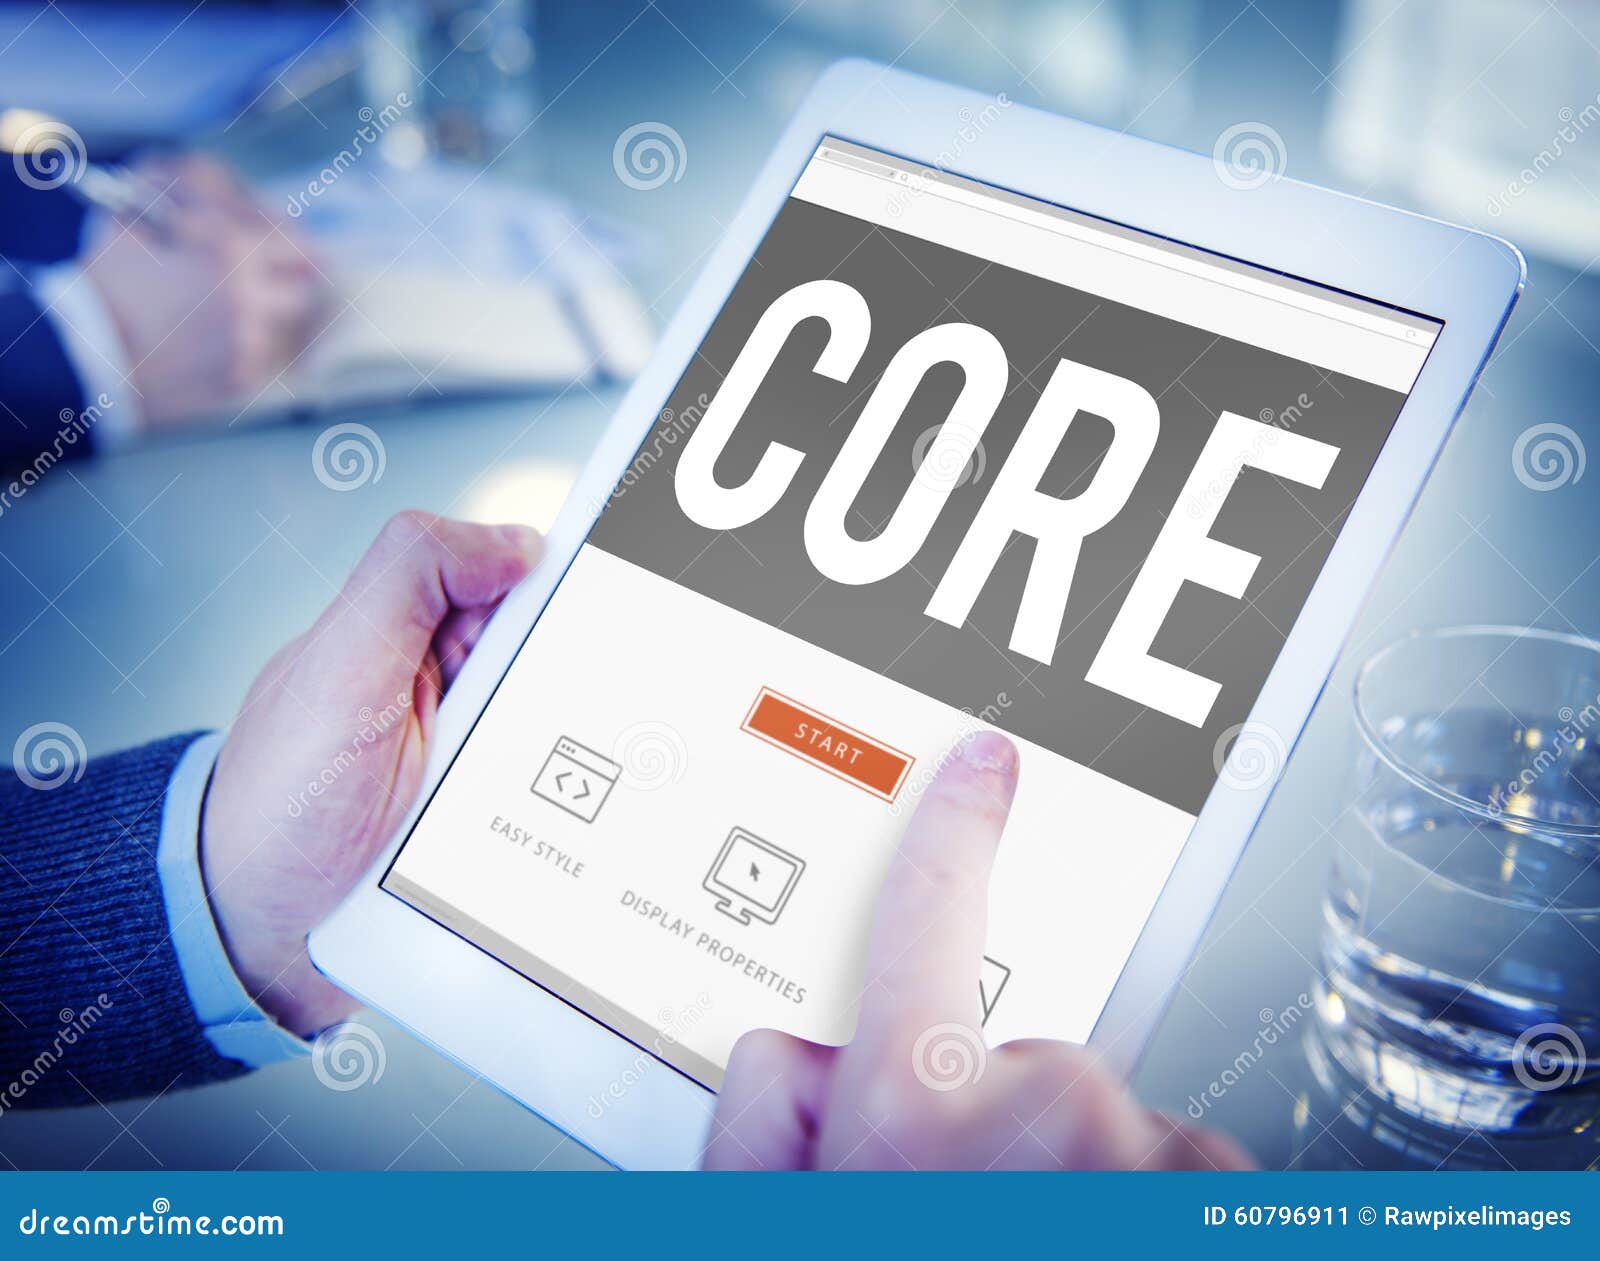 core core values focus goals ideology main purpose concept